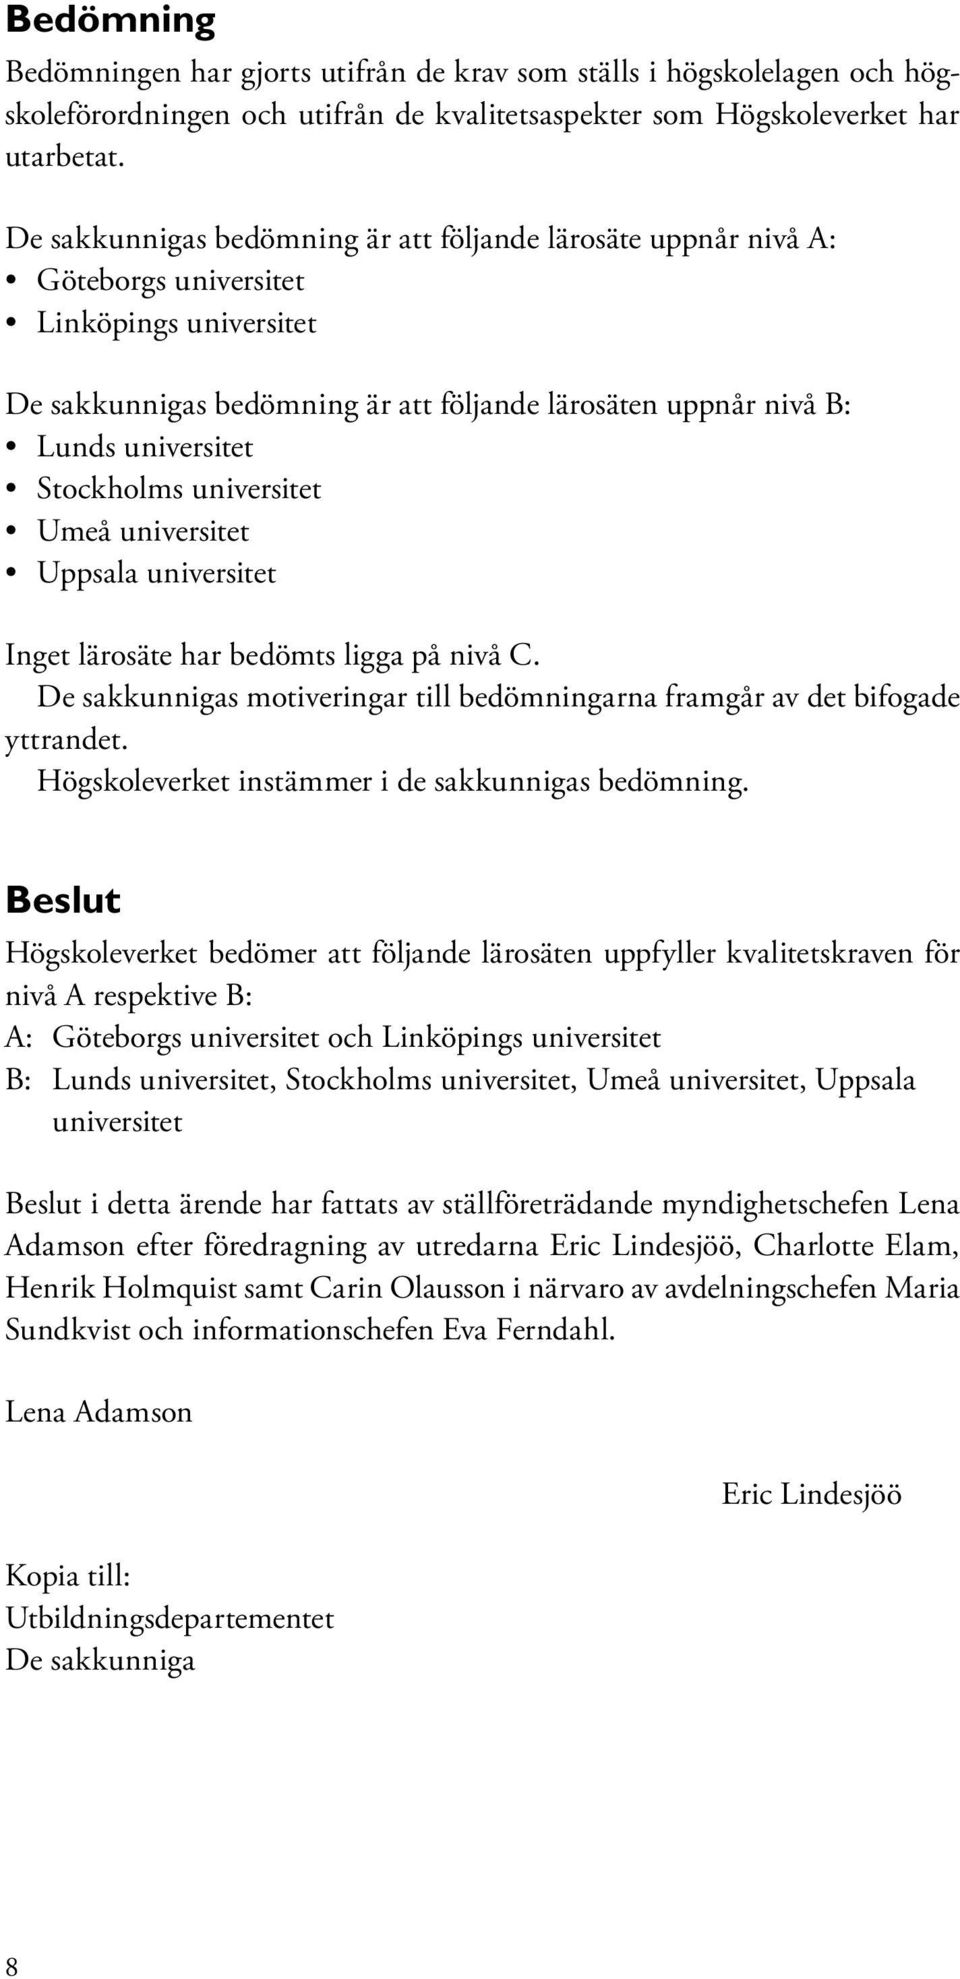 Stockholms universitet Umeå universitet Uppsala universitet Inget lärosäte har bedömts ligga på nivå C. De sakkunnigas motiveringar till bedömningarna framgår av det bifogade yttrandet.